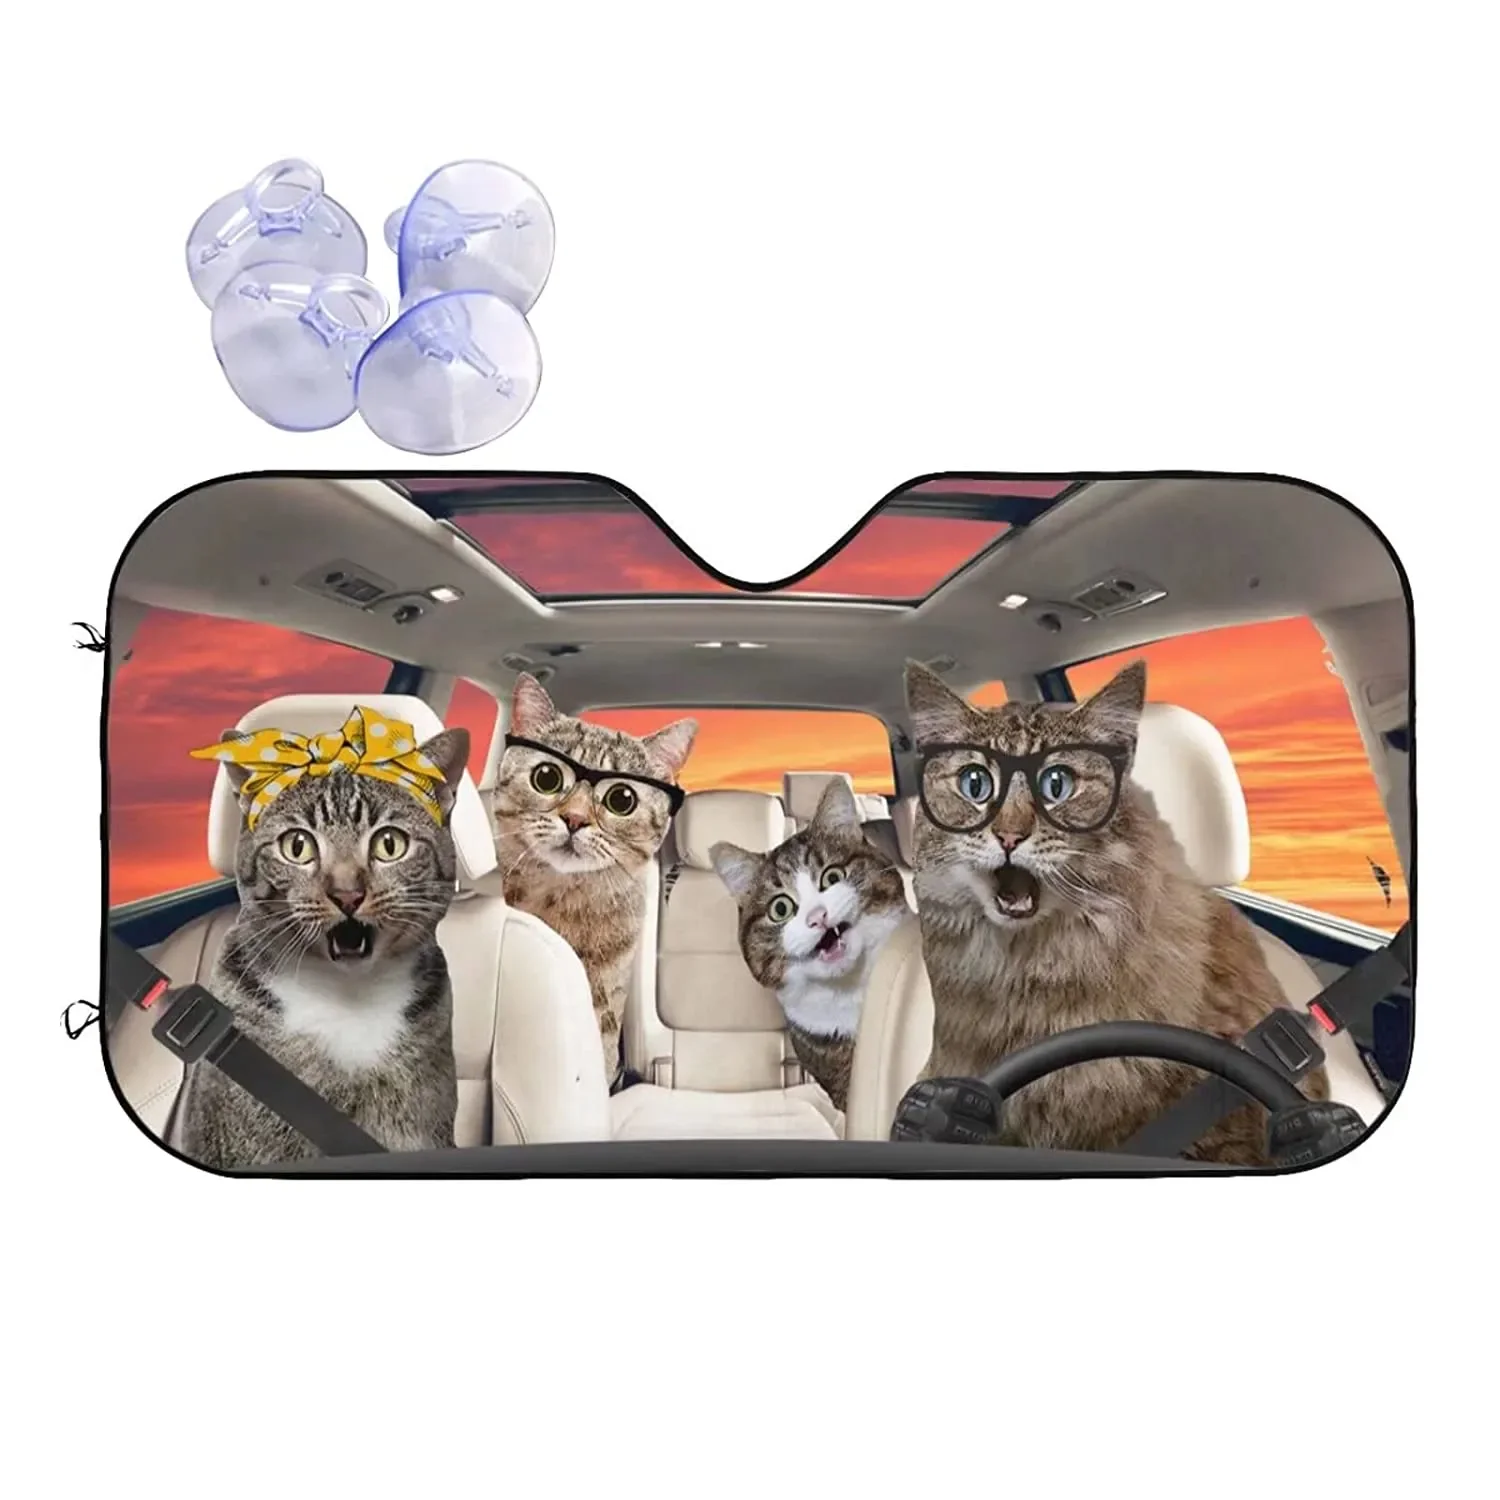 

Забавный кошачий солнцезащитный козырек на лобовое стекло автомобиля, складной кошачий солнцезащитный козырек для автомобиля, грузовика, внедорожника, чтобы ваш автомобиль оставался крутым, авто